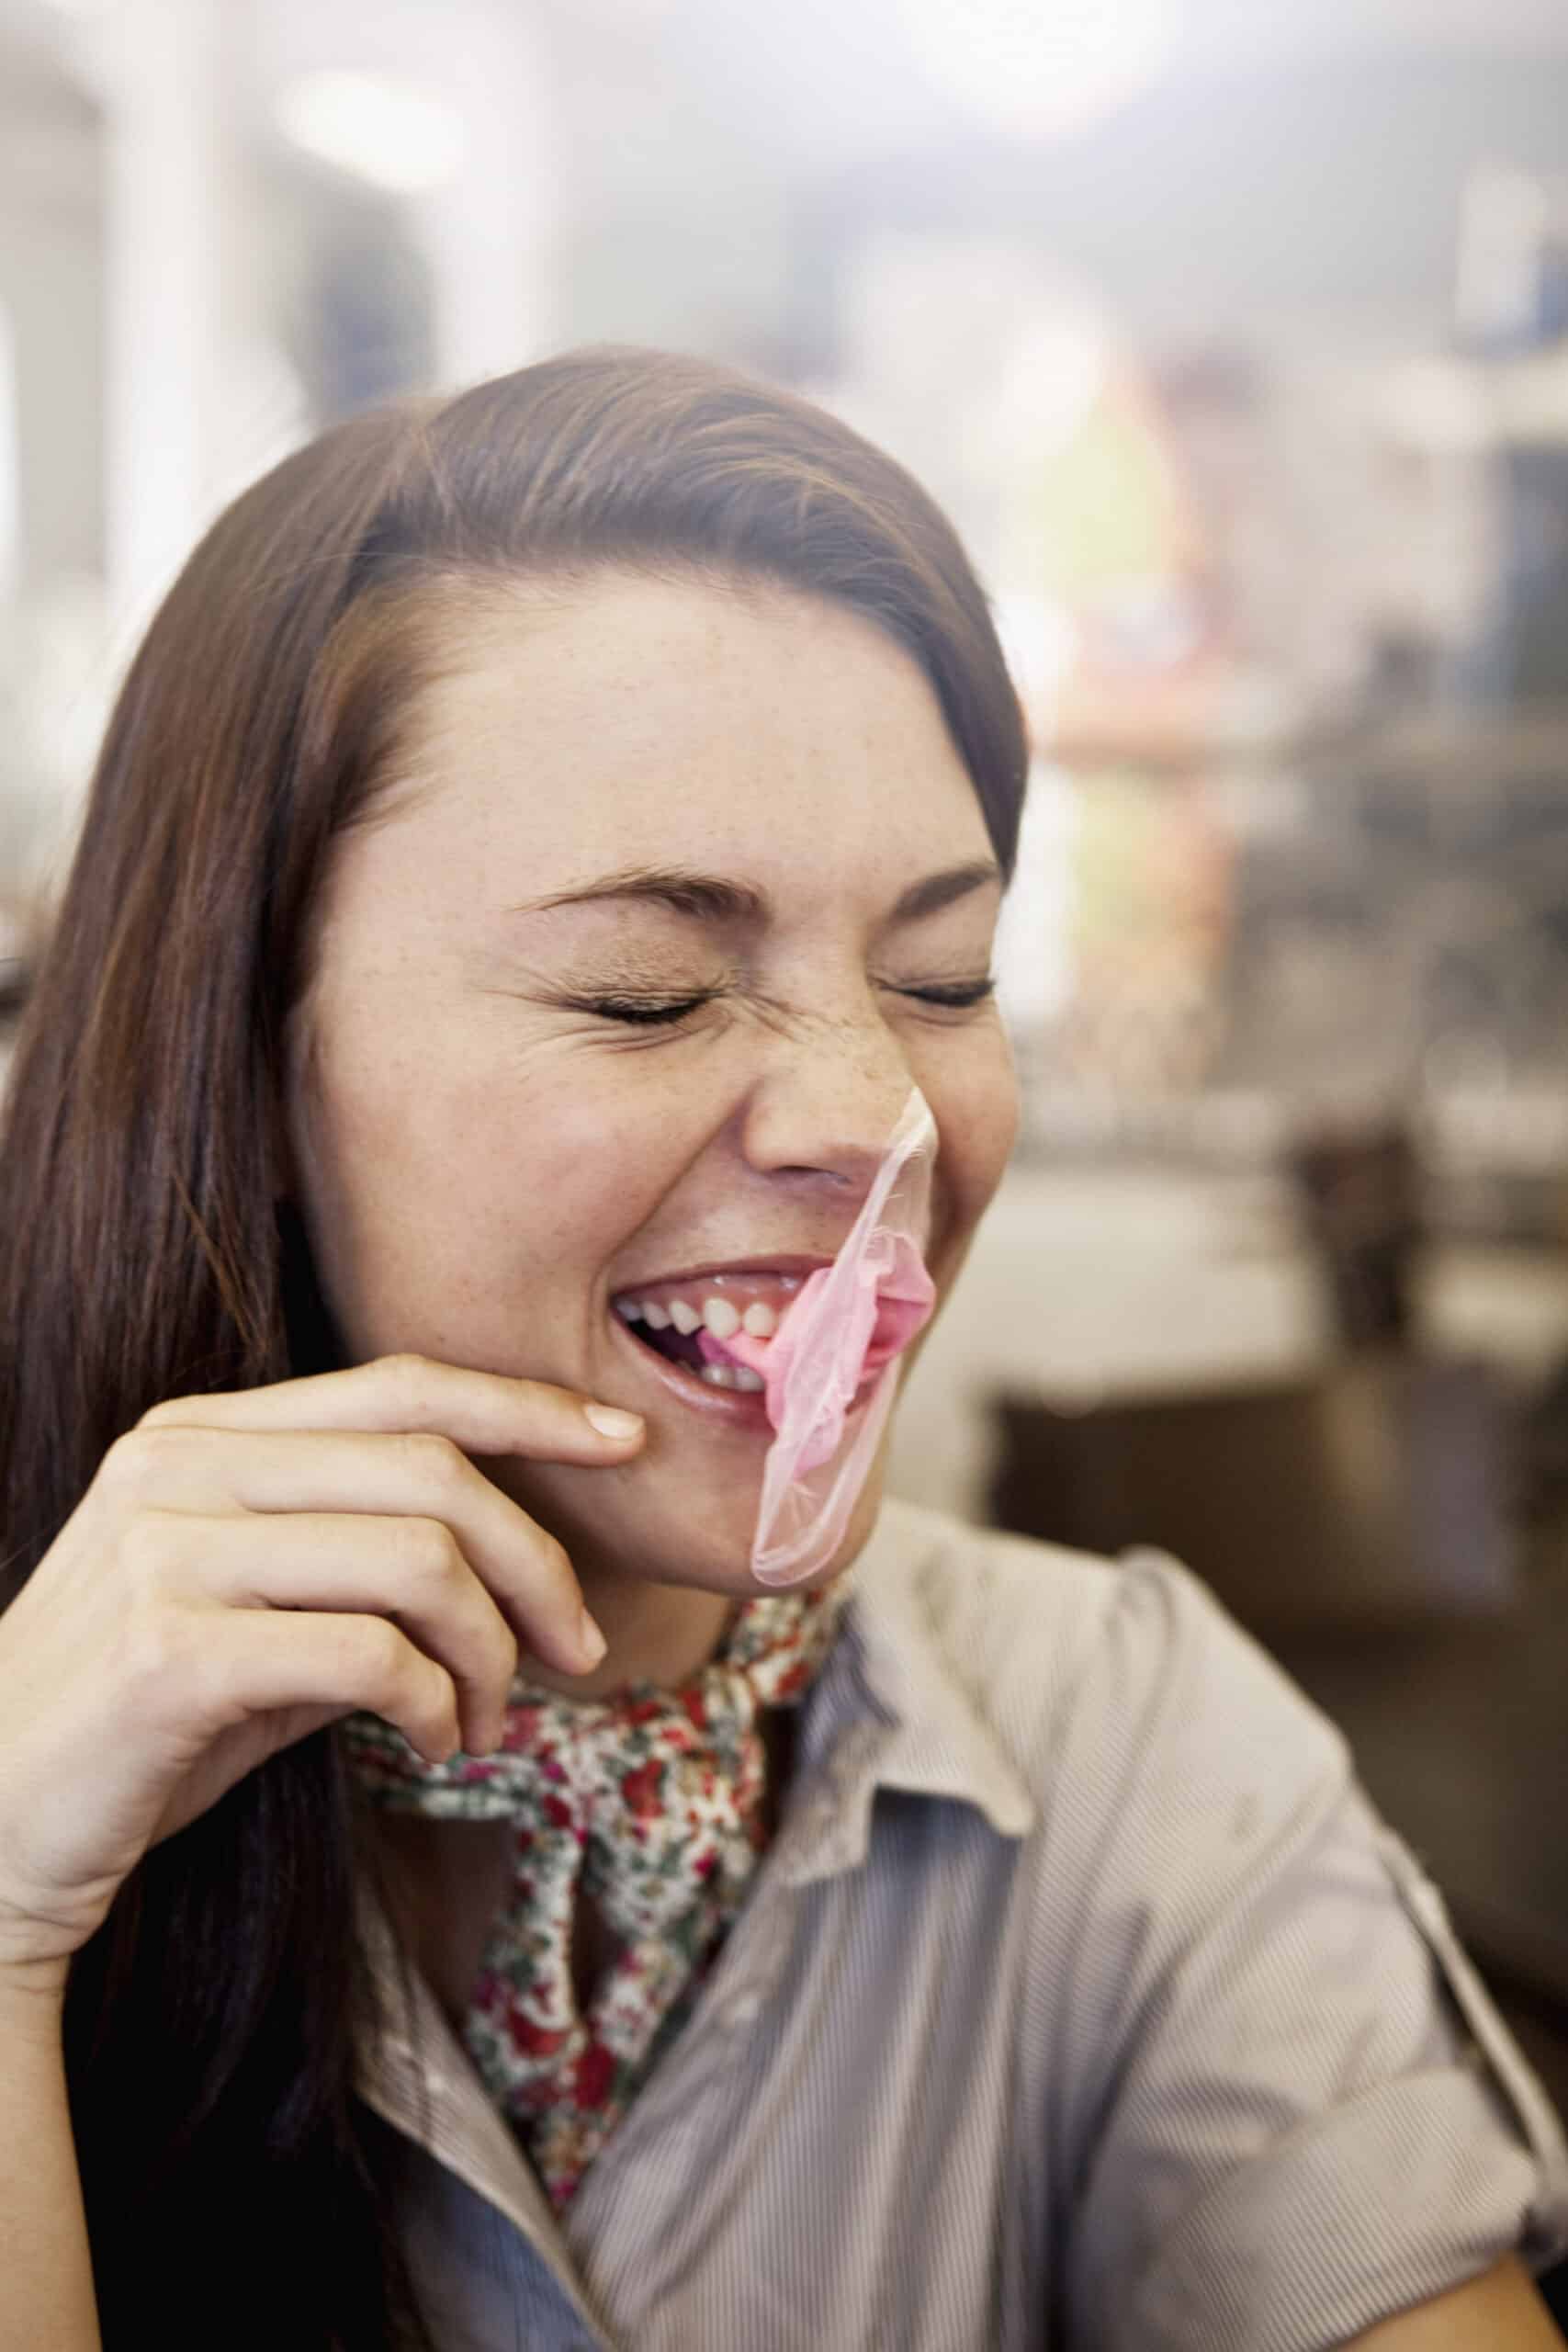 Eine fröhliche junge Frau mit langen braunen Haaren, die in einer Diner-ähnlichen Umgebung lacht und ein Stück rosa Kaugummi aus ihrem Mund zieht. © Fotografie Tomas Rodriguez